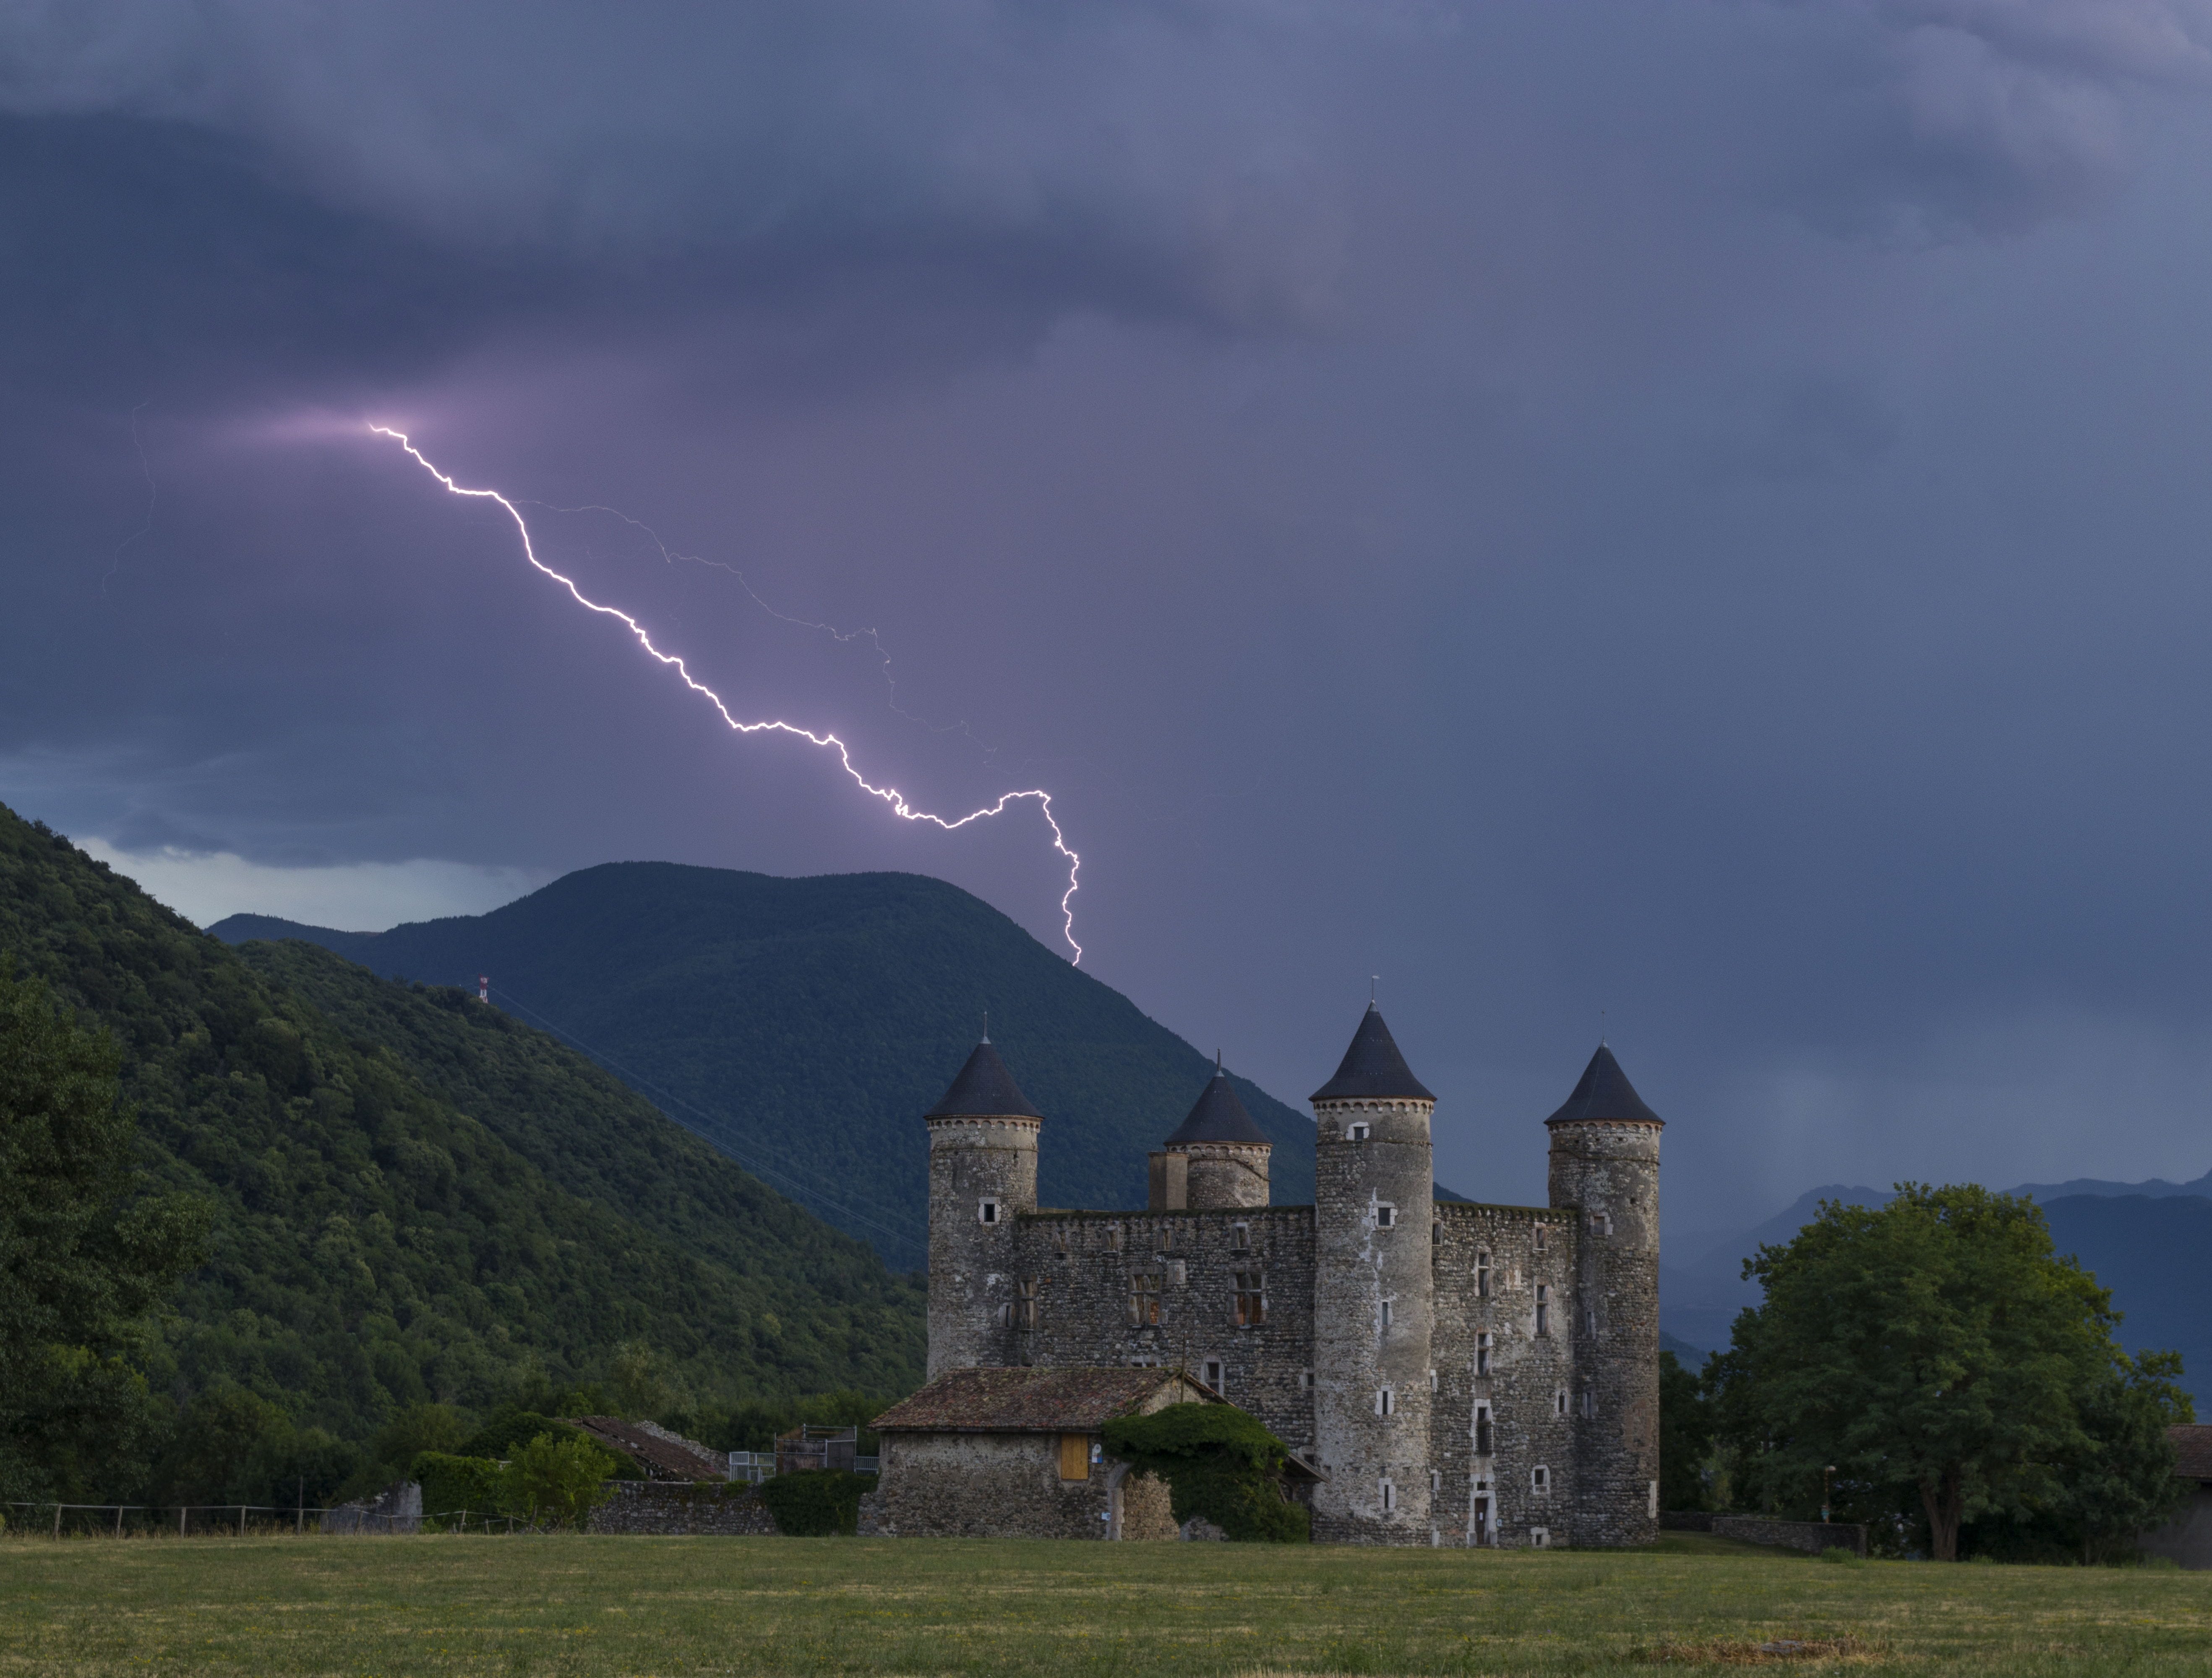 De retour au sud de Grenoble pour intercepter une cellule qui traversera le Vercors, je me place devant le château de Jarrie pour capturer cette image. - 03/07/2022 20:30 - frederic sanchis